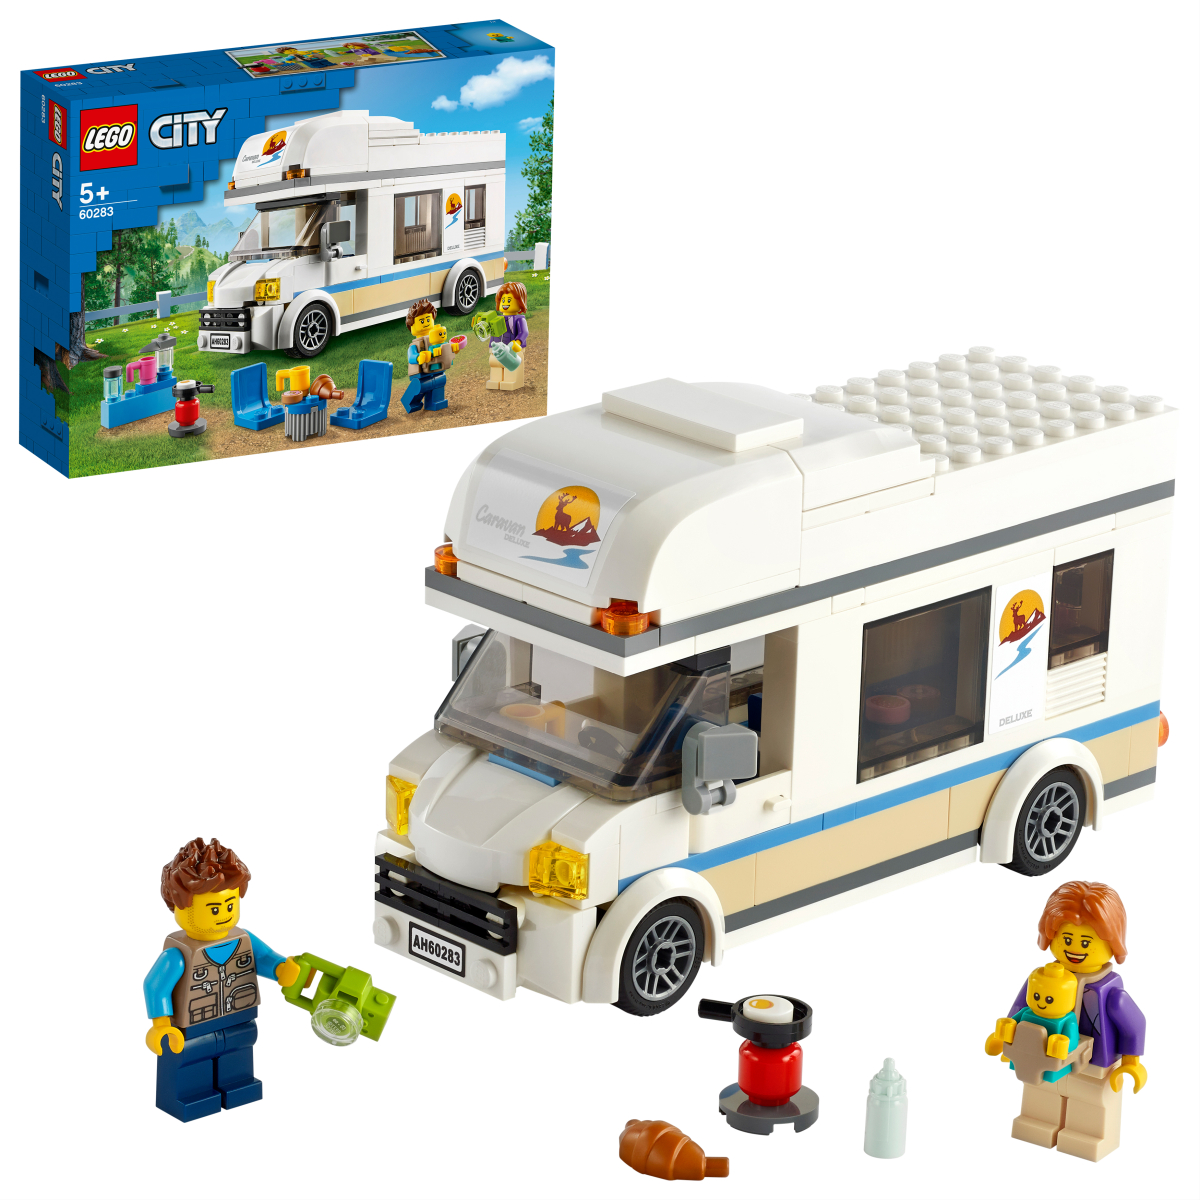 LEGO CITY Конструктор "Отпуск в доме на колесах" 60283 - фото 1